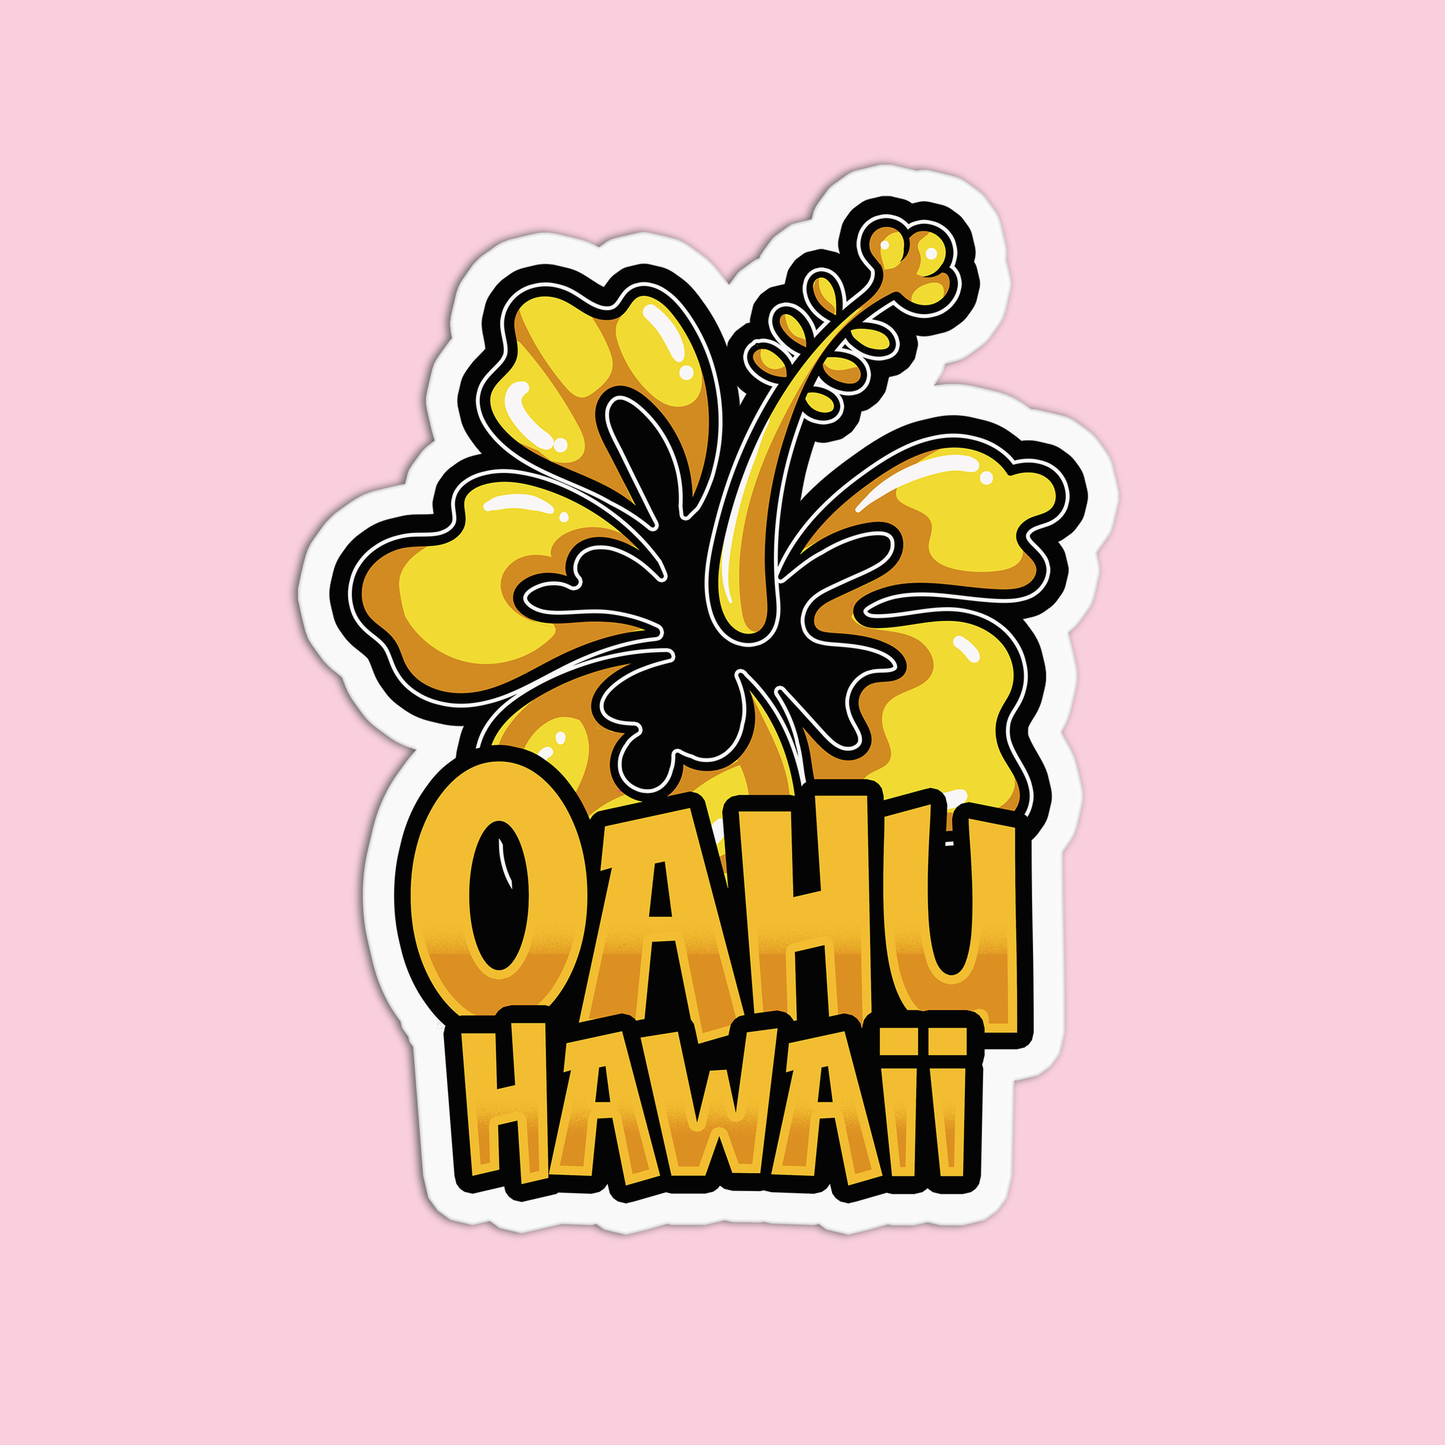 Oahu Hawaii Stickers